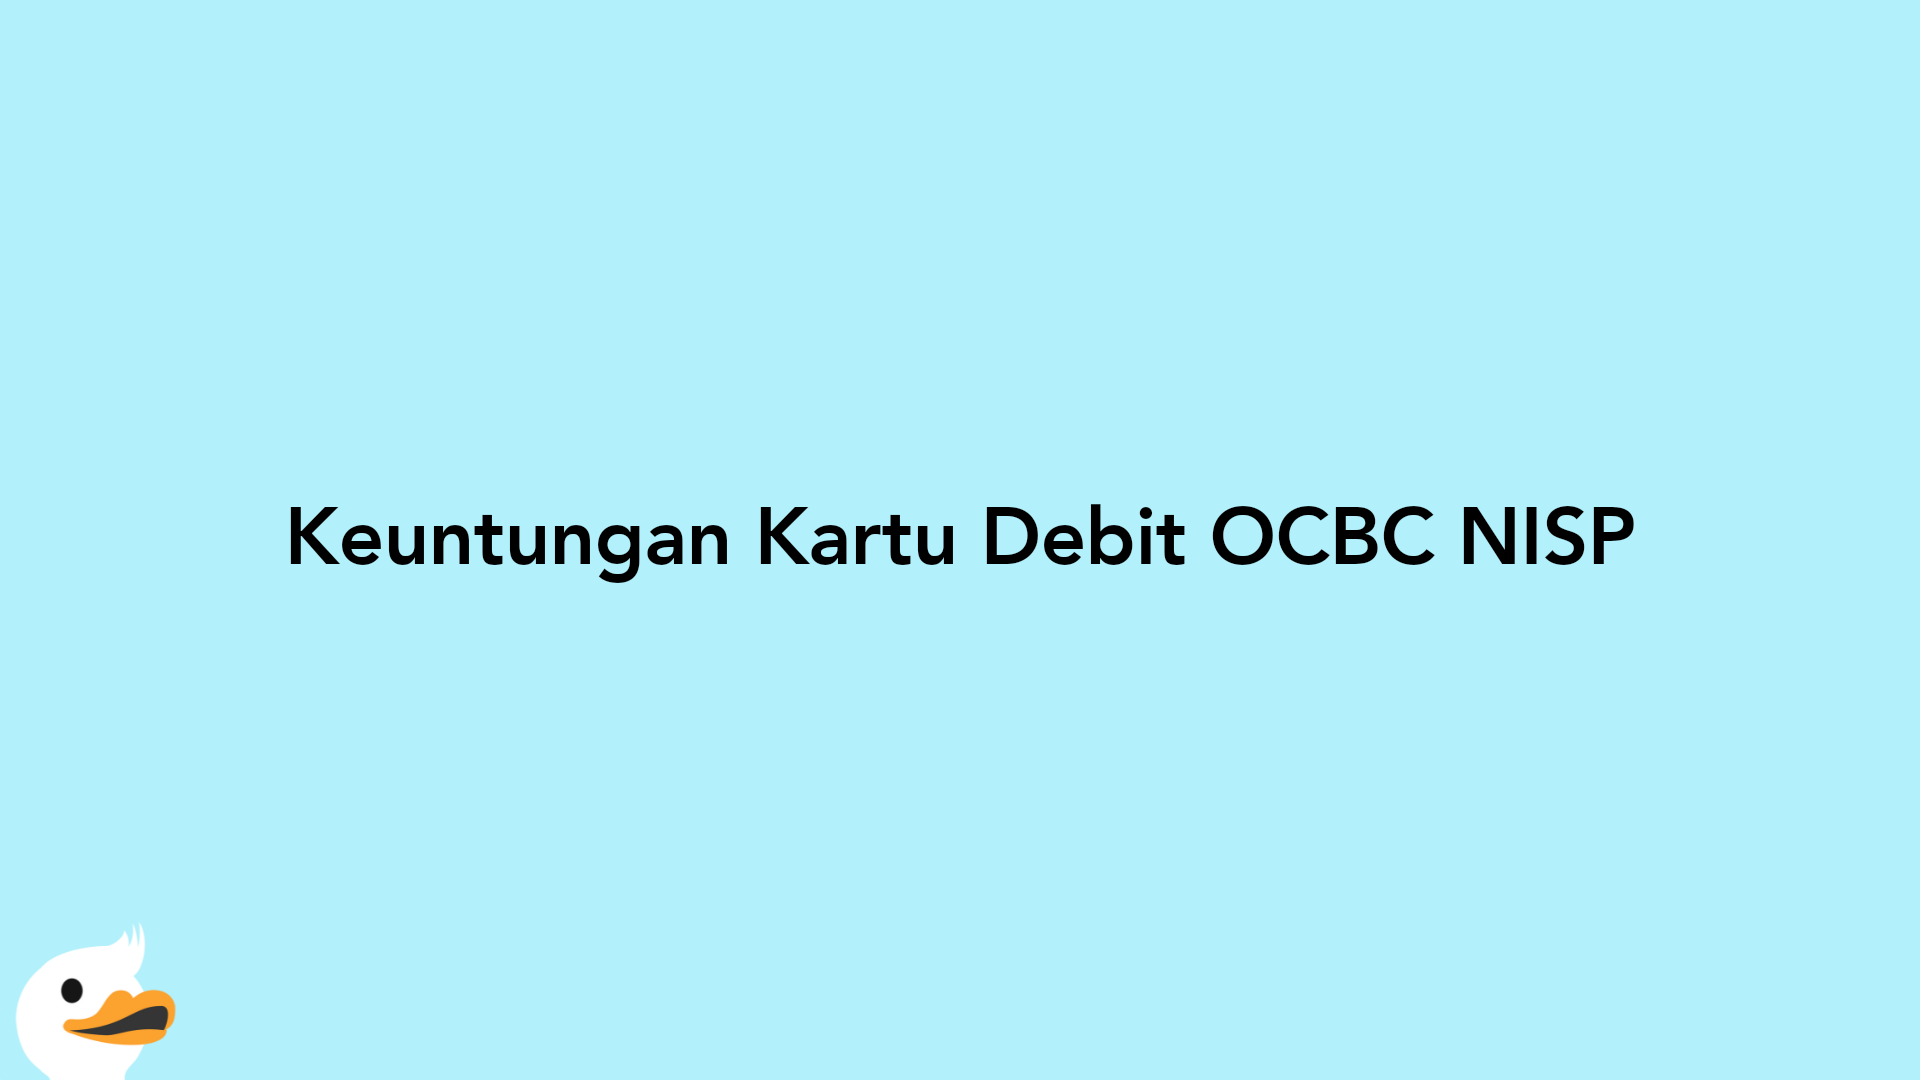 Keuntungan Kartu Debit OCBC NISP